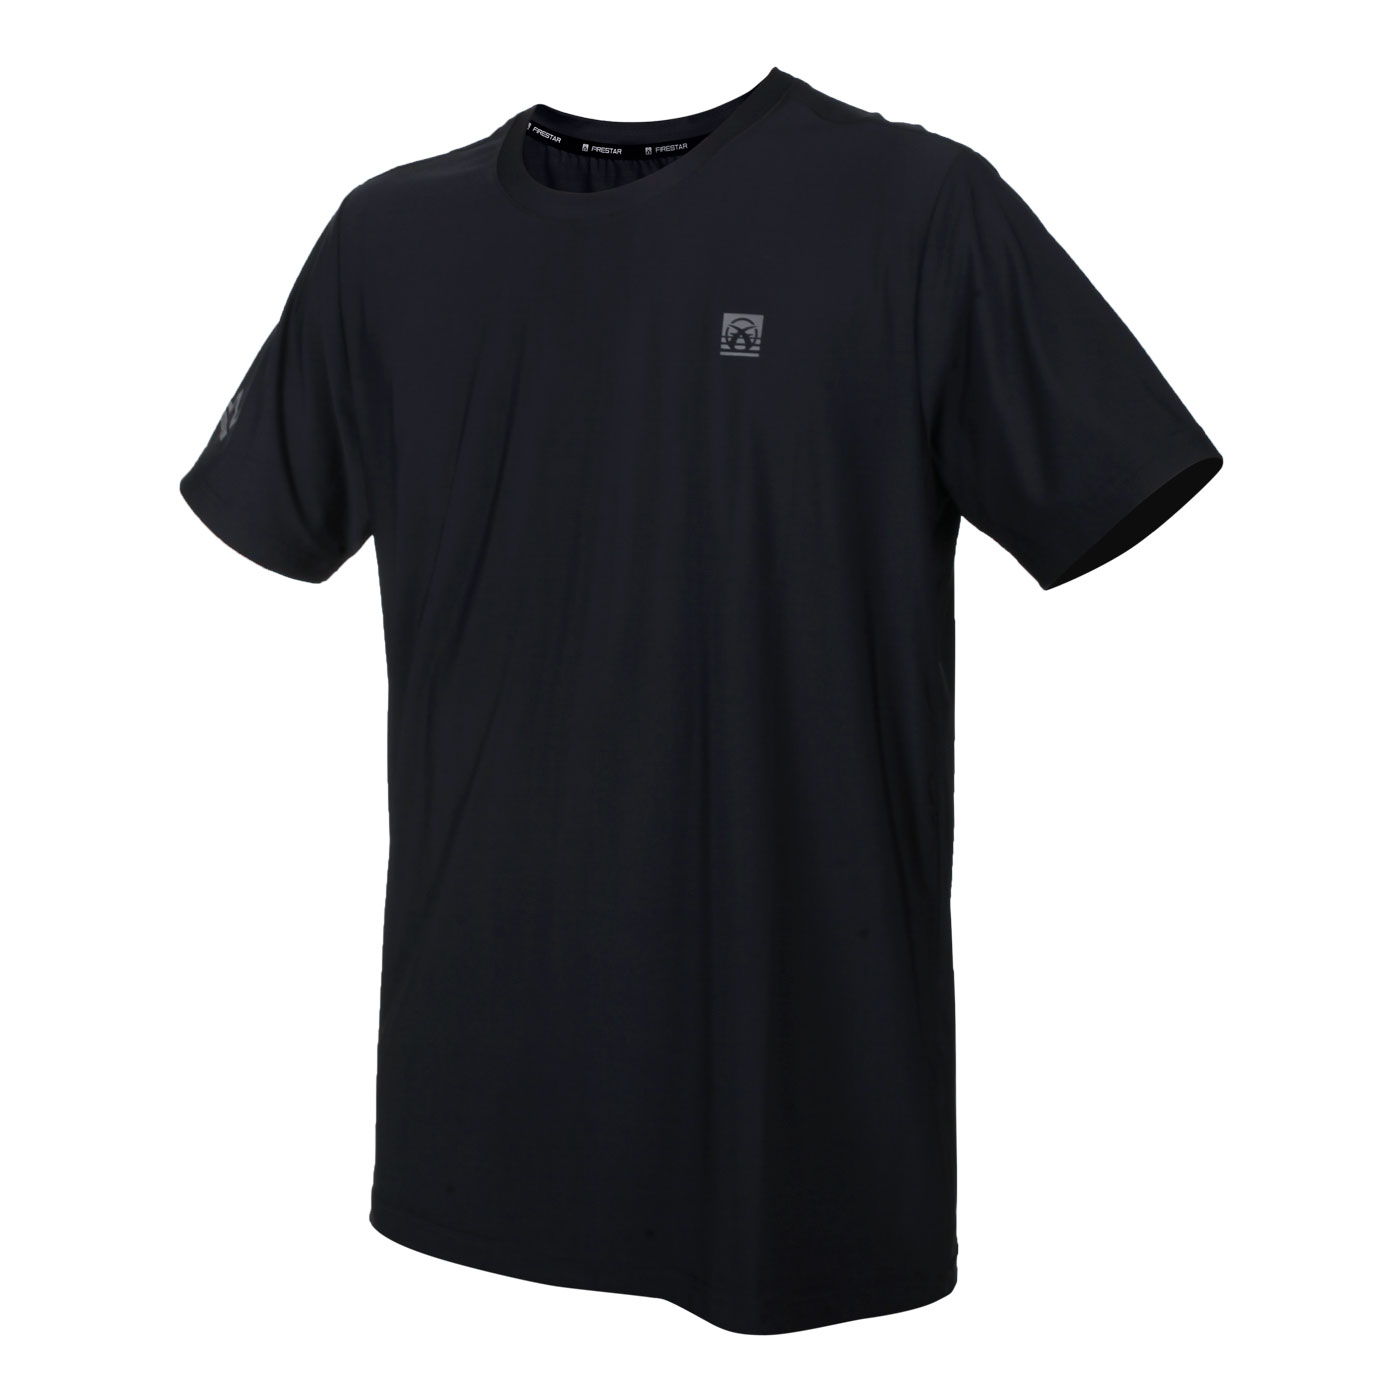 FIRESTAR 男款彈性圓領短袖T恤 D2032-10 - 黑灰